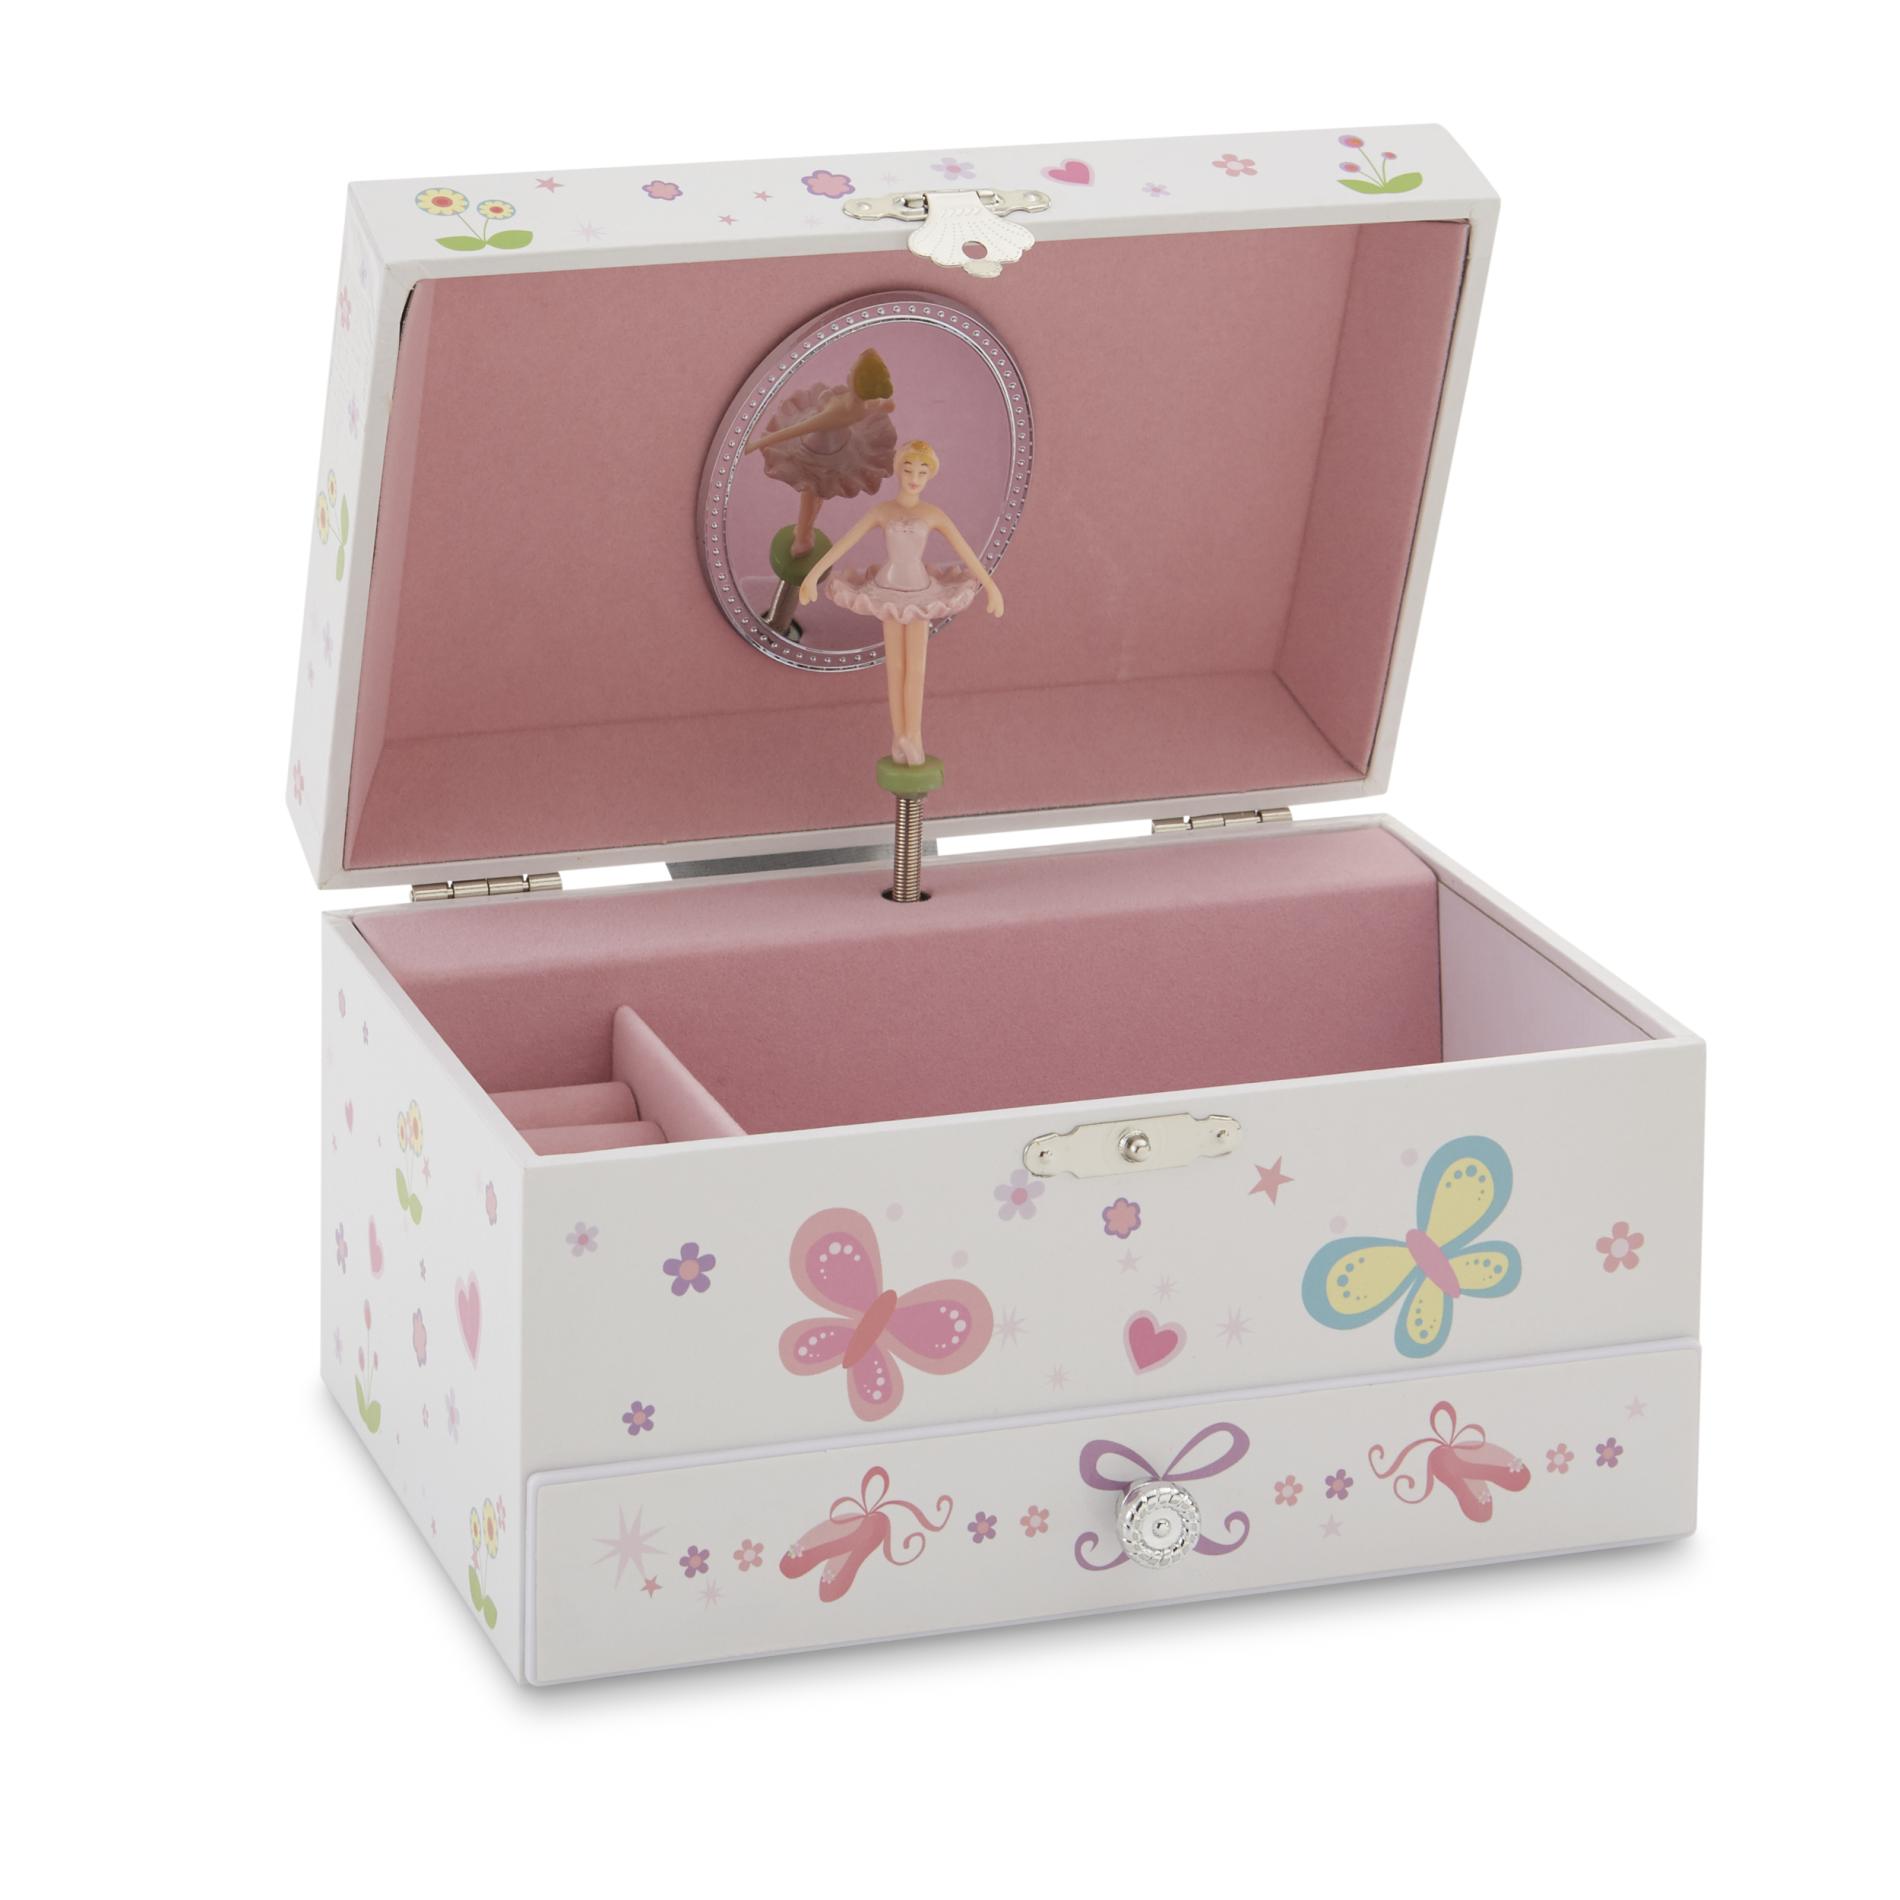 children's jewelry box with ballerina